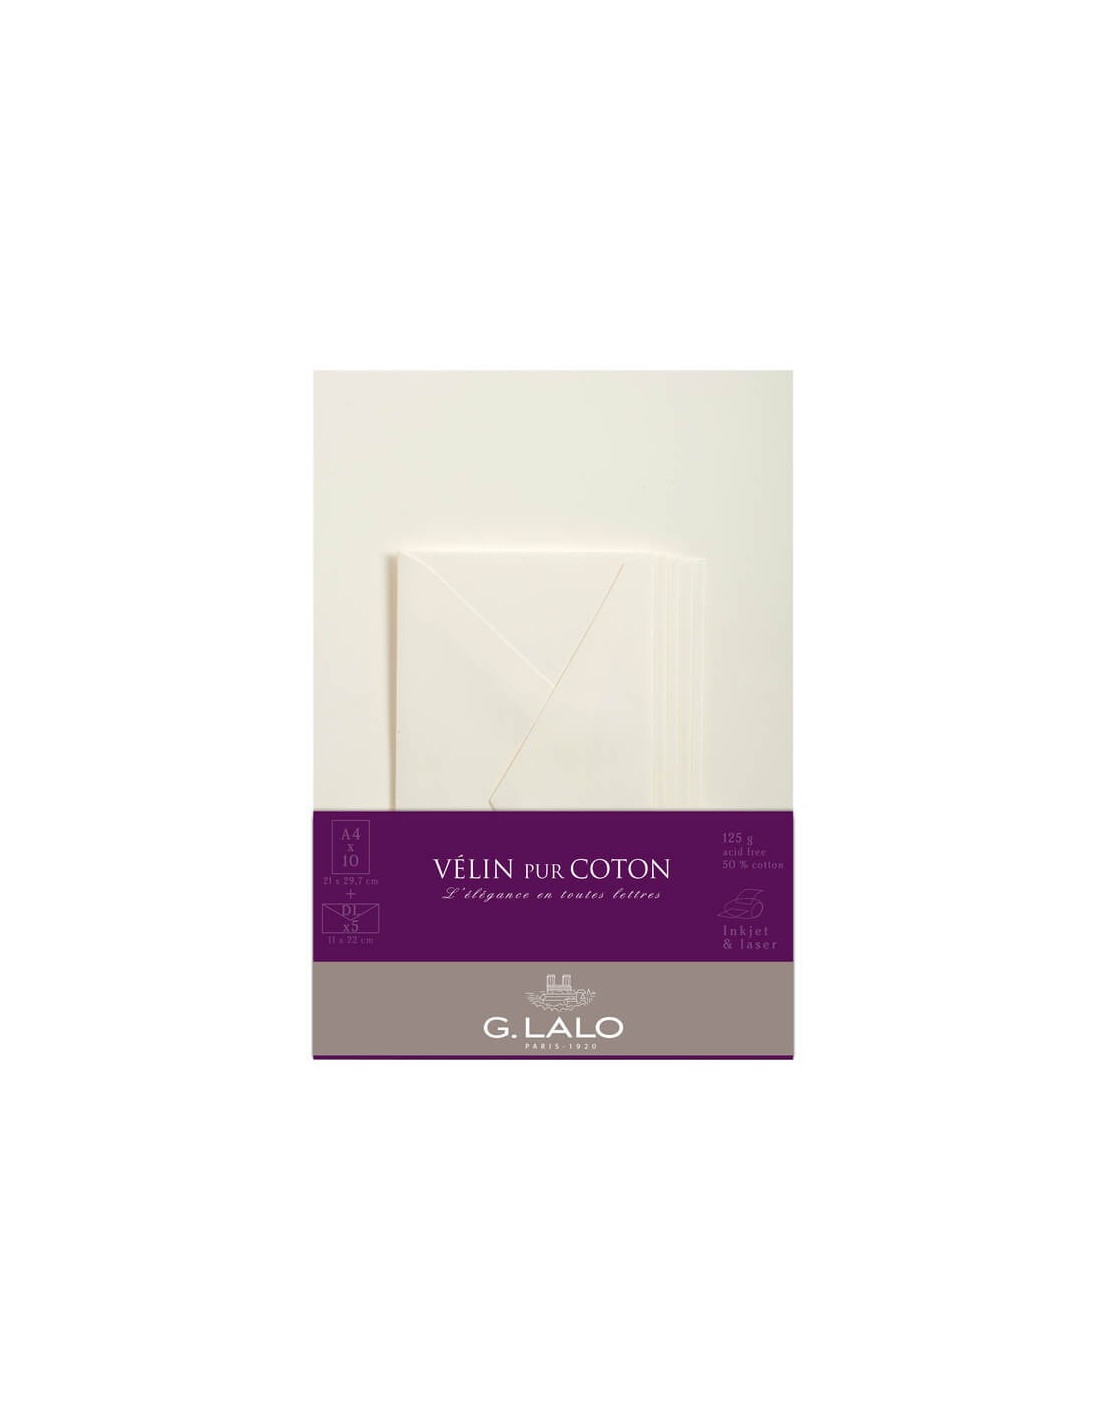 10 feuilles A4 et 5 enveloppes DL - Vélin pur coton - G. Lalo